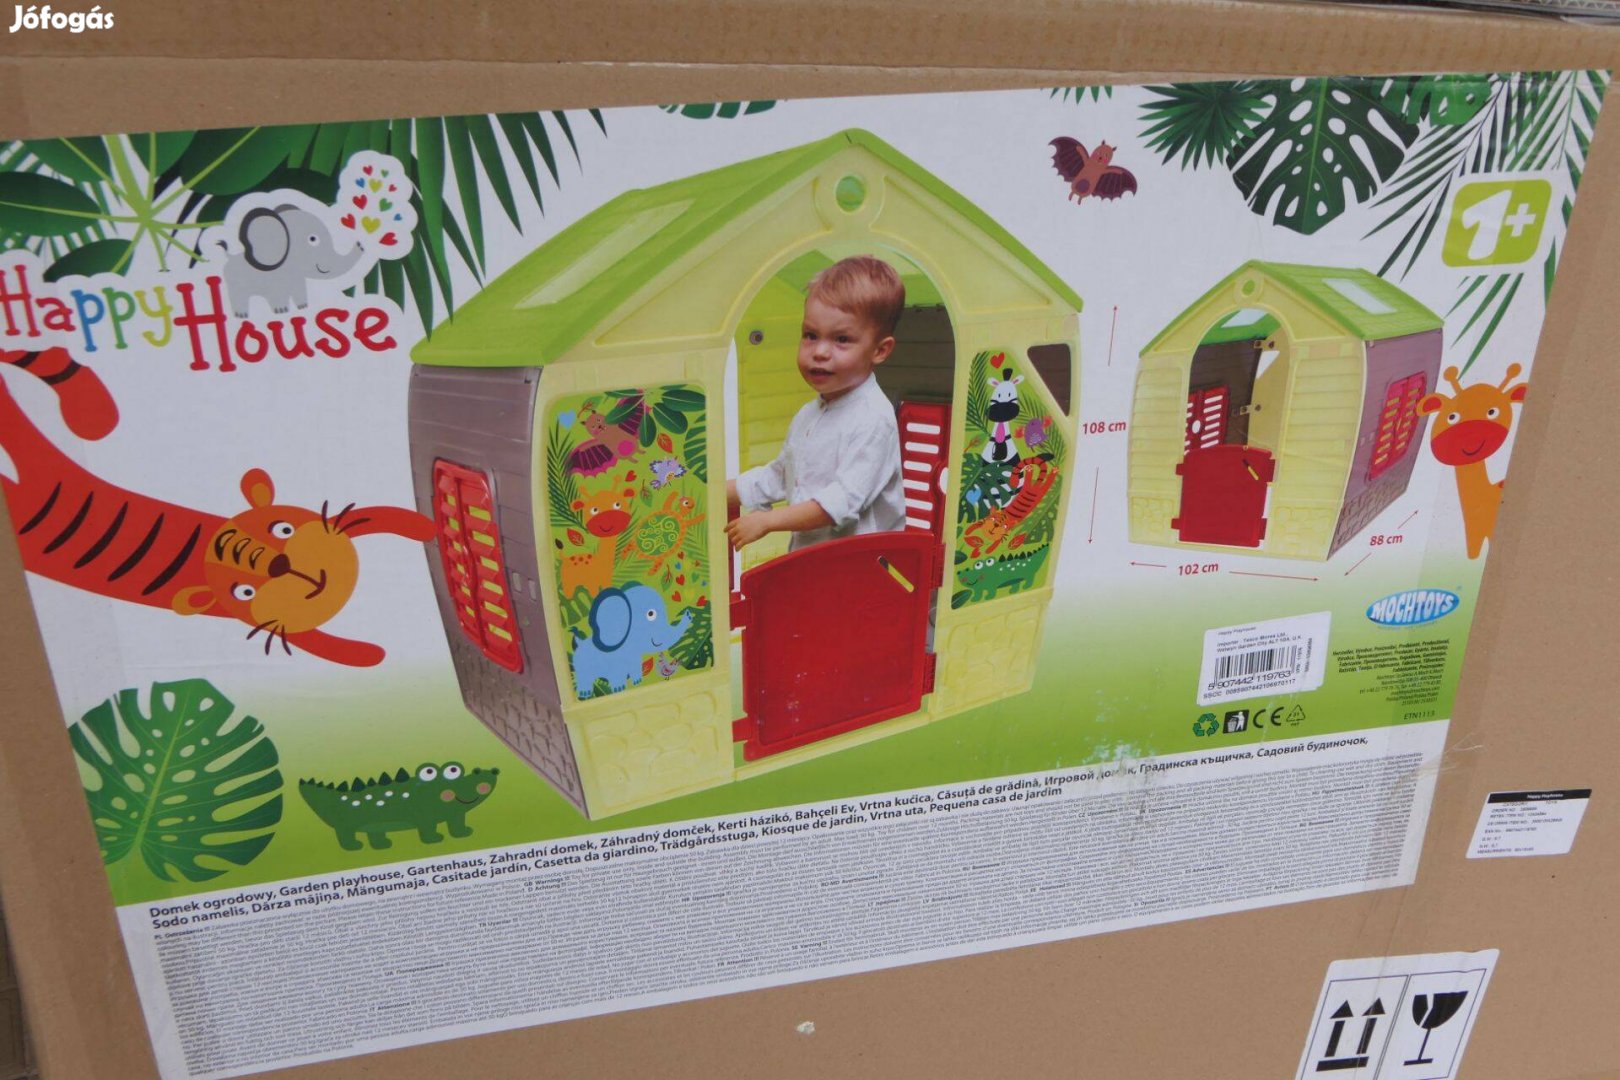 Új! Happy House műanyag játszóház (játékház) 2 éves kortól